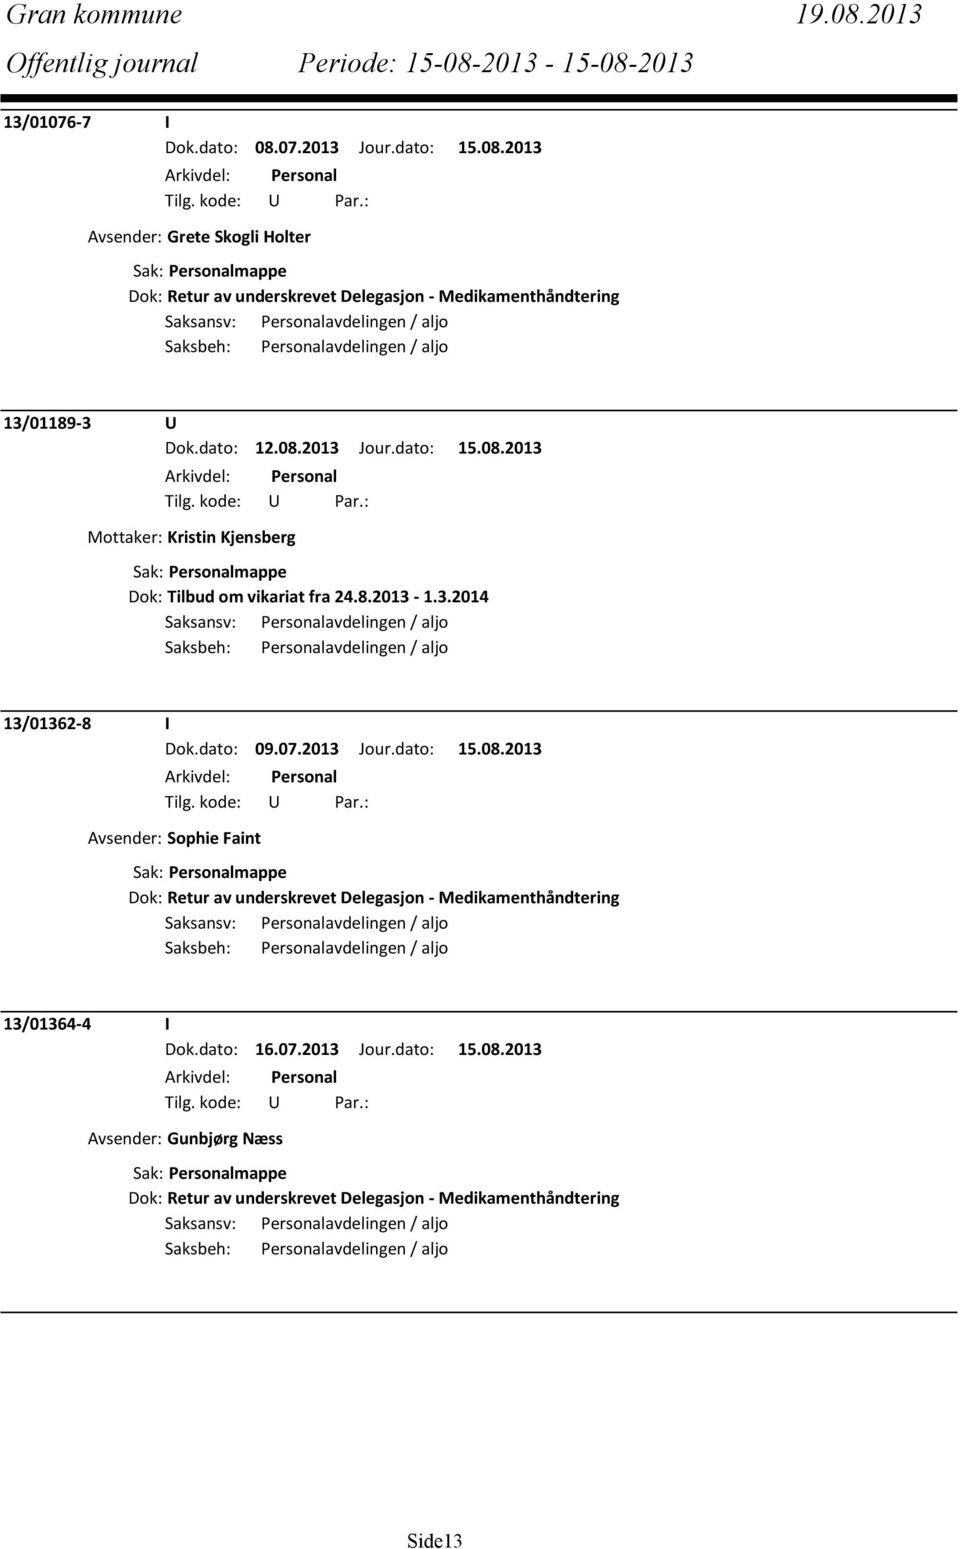 2013 Jour.dato: 15.08.2013 Avsender: Sophie Faint Dok: Retur av underskrevet Delegasjon - Medikamenthåndtering 13/01364-4 I Dok.dato: 16.07.